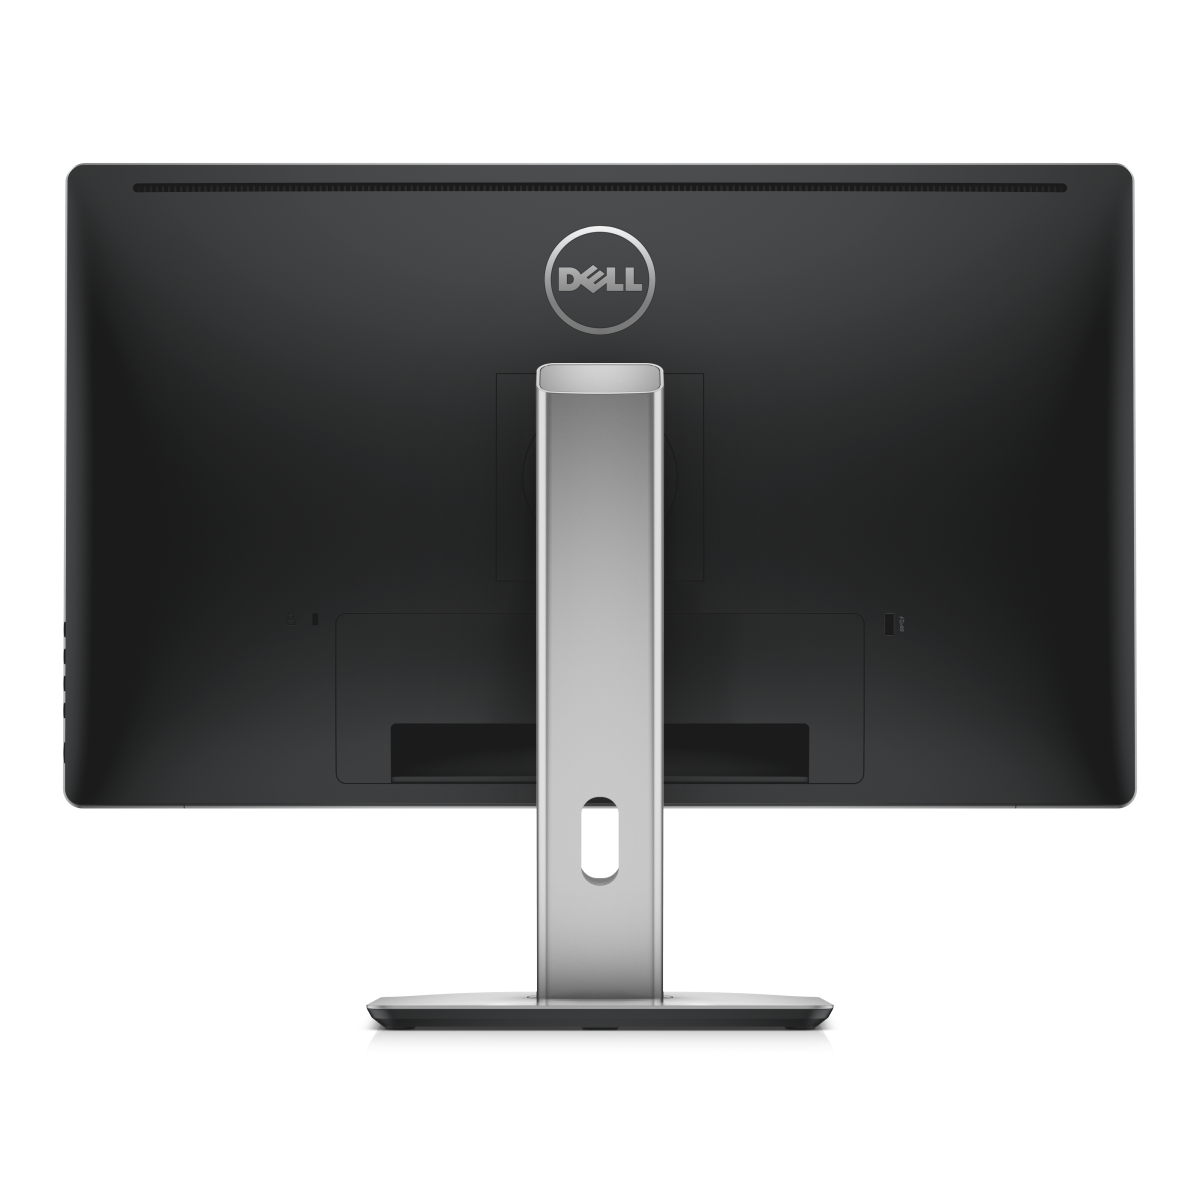 Immagine pubblicata in relazione al seguente contenuto: Dell annuncia il monitor UltraSharp 27 HD 5K che lavora in Ultra HD 5K | Nome immagine: news21600_Dell-UltraSharp-27-Ultra-HD-5K_4.png